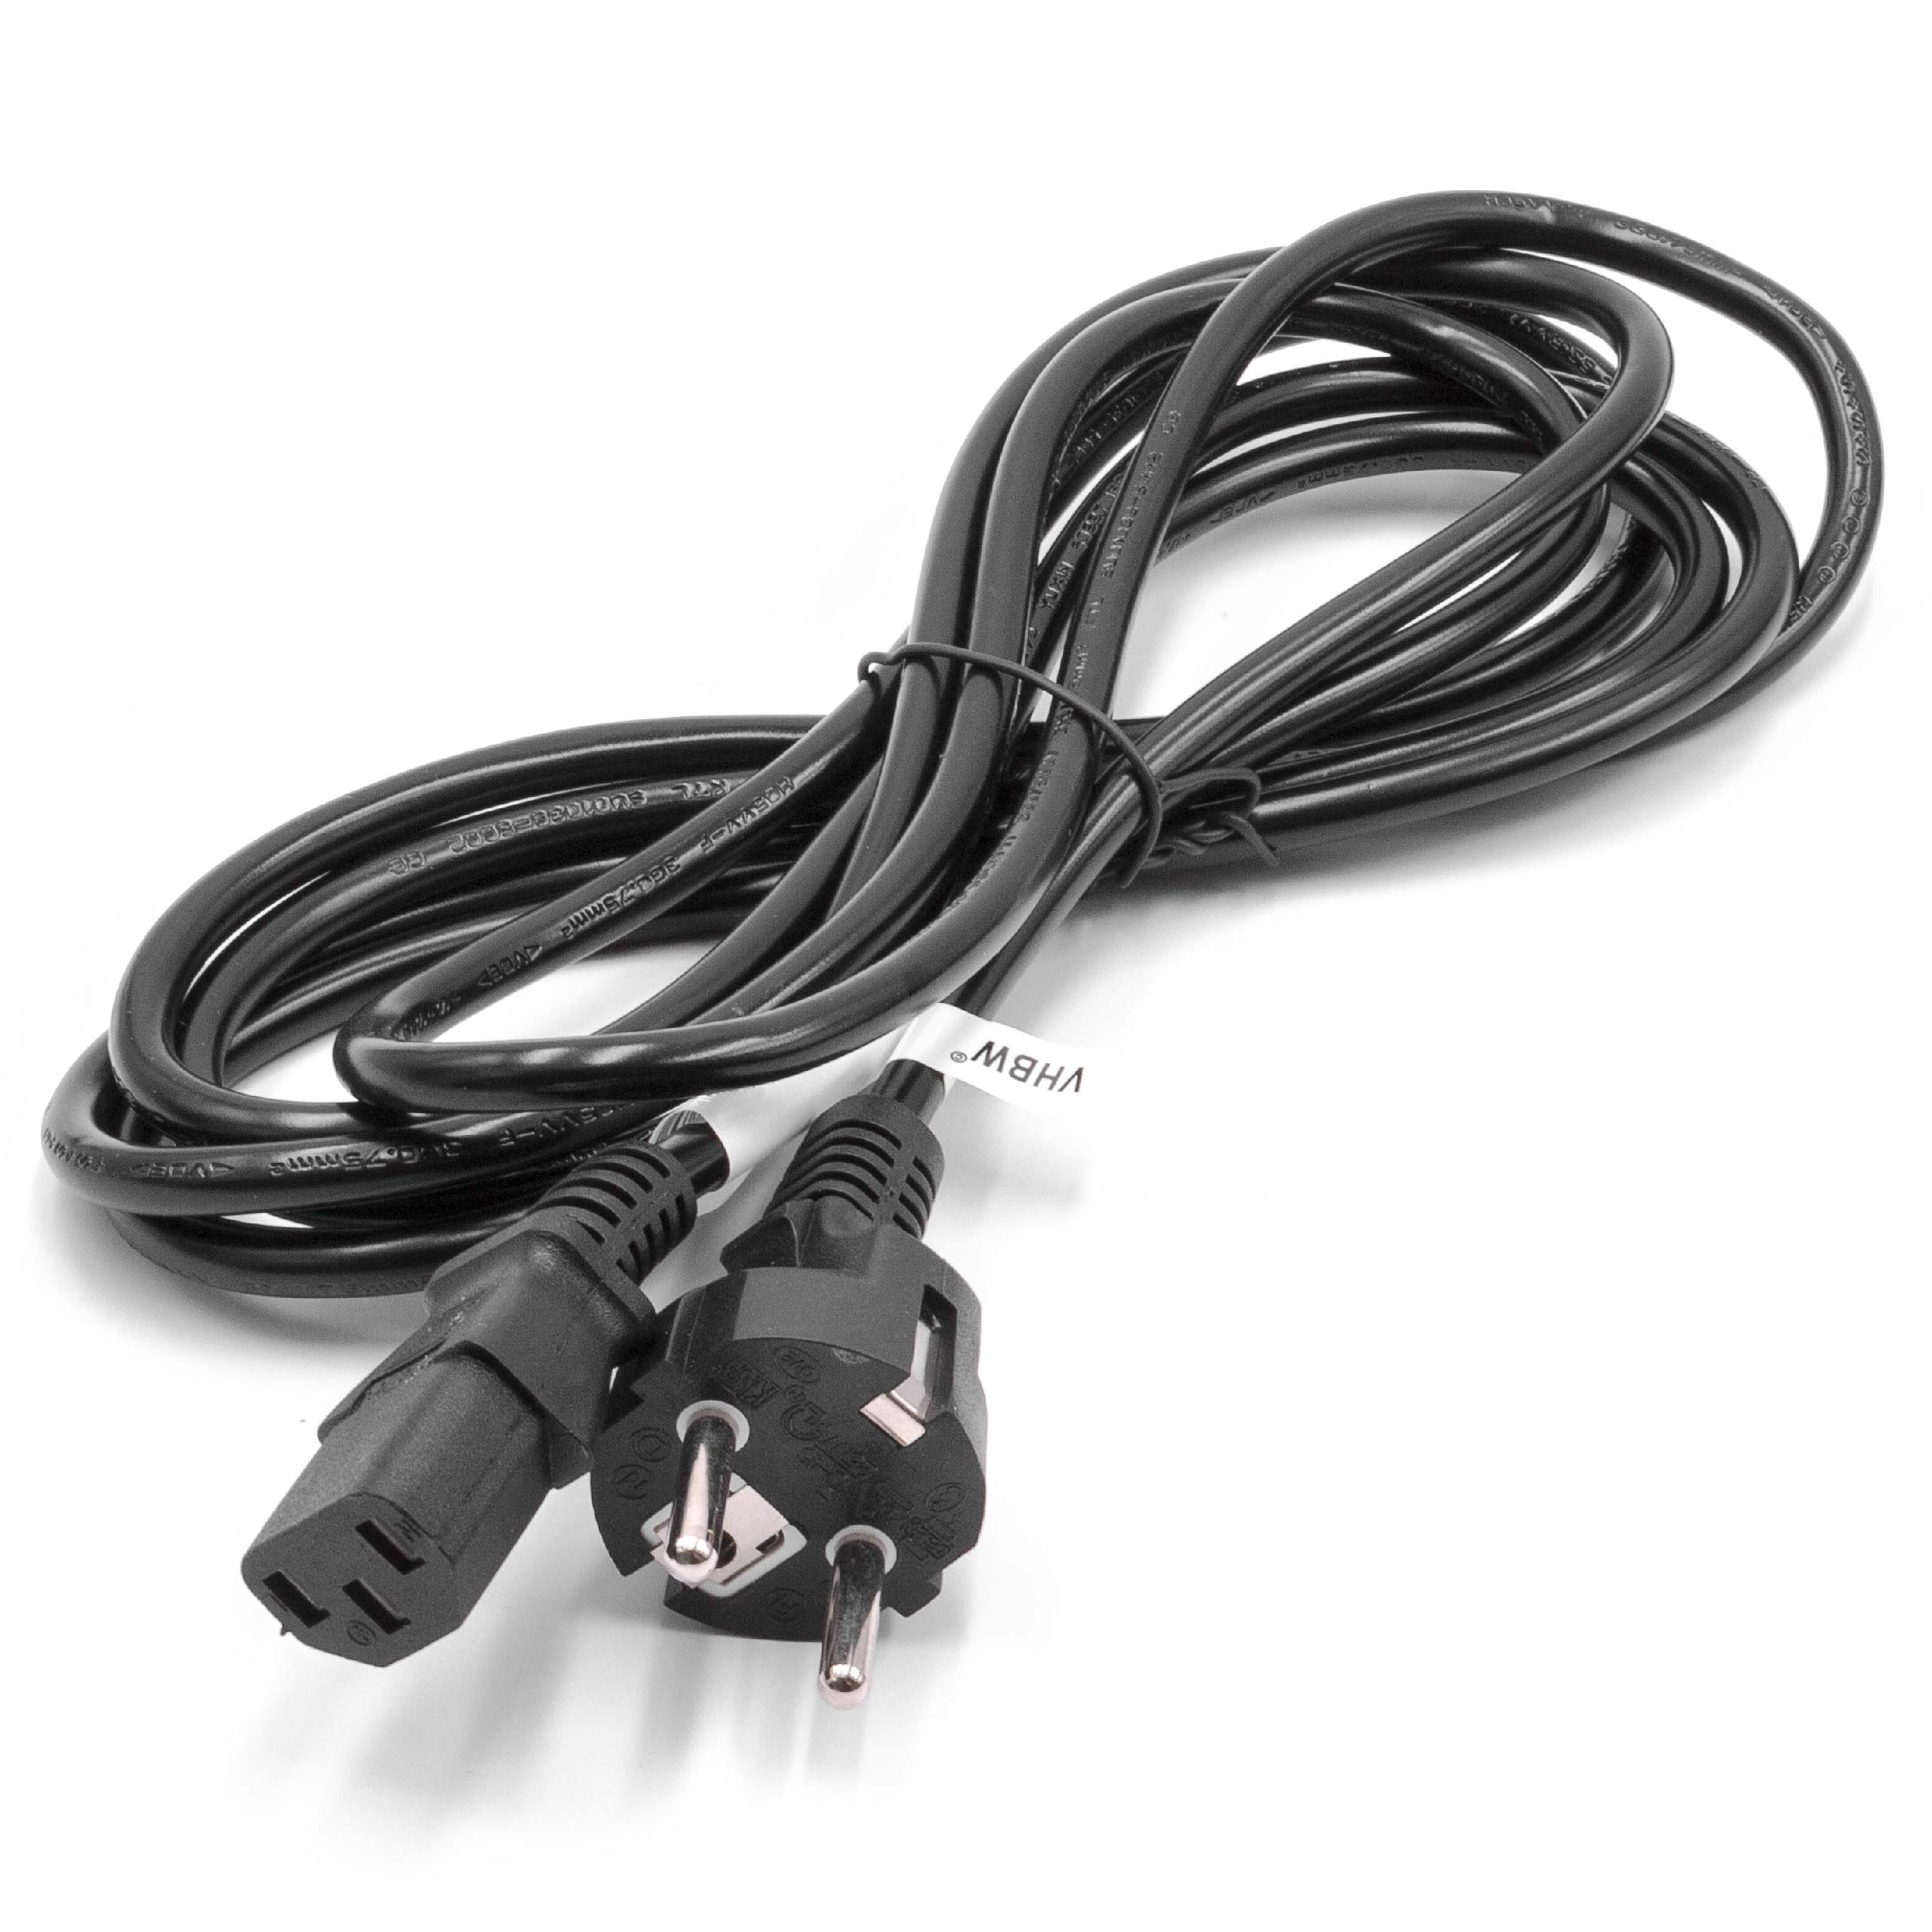 vhbw Câble connecteur euro type F compatible avec appareils électriques comme PC moniteur - Prise C13, 3m